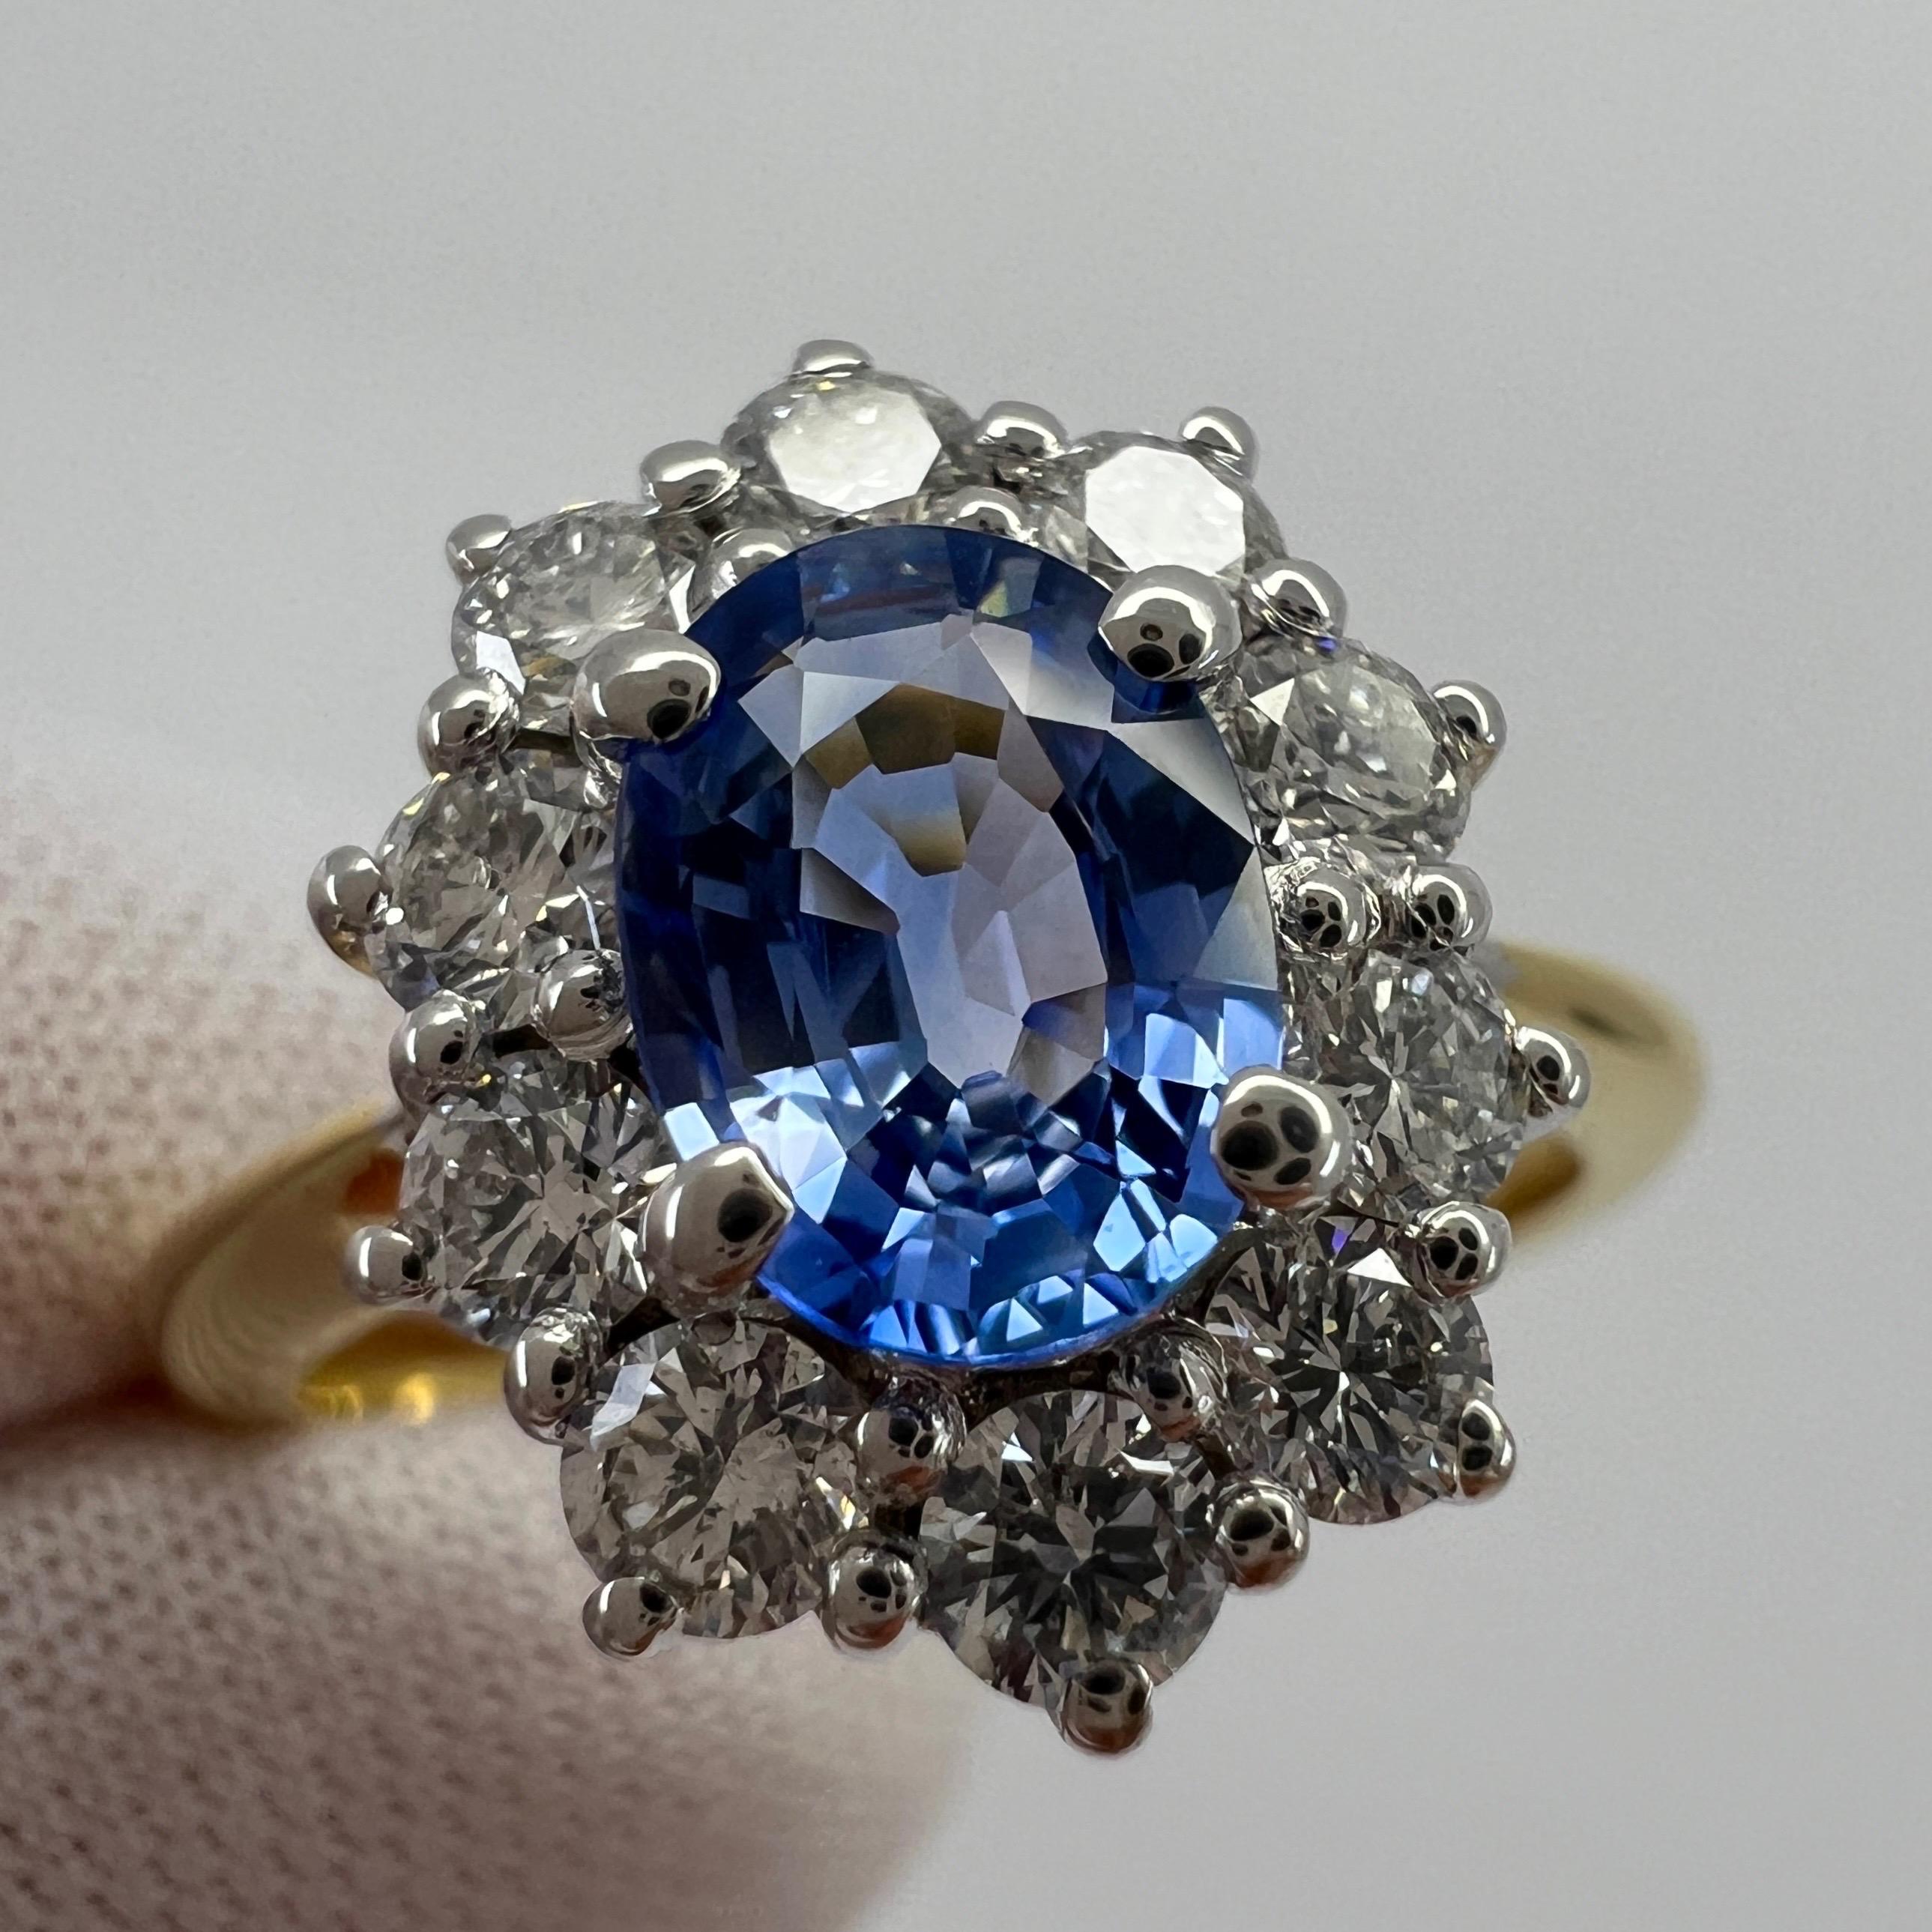 Fine Vivid Blue Oval Cut Ceylon Saphir & Diamant 18k Gold Cluster Ring 1,62 Gesamtkarat.

Feiner, oval geschliffener blauer Ceylon-Saphir als Mittelstein. 1,00 Karat, 7x5,2 mm. Hat einen ausgezeichneten Schliff und Klarheit VVS.
Abgebaut in Sri